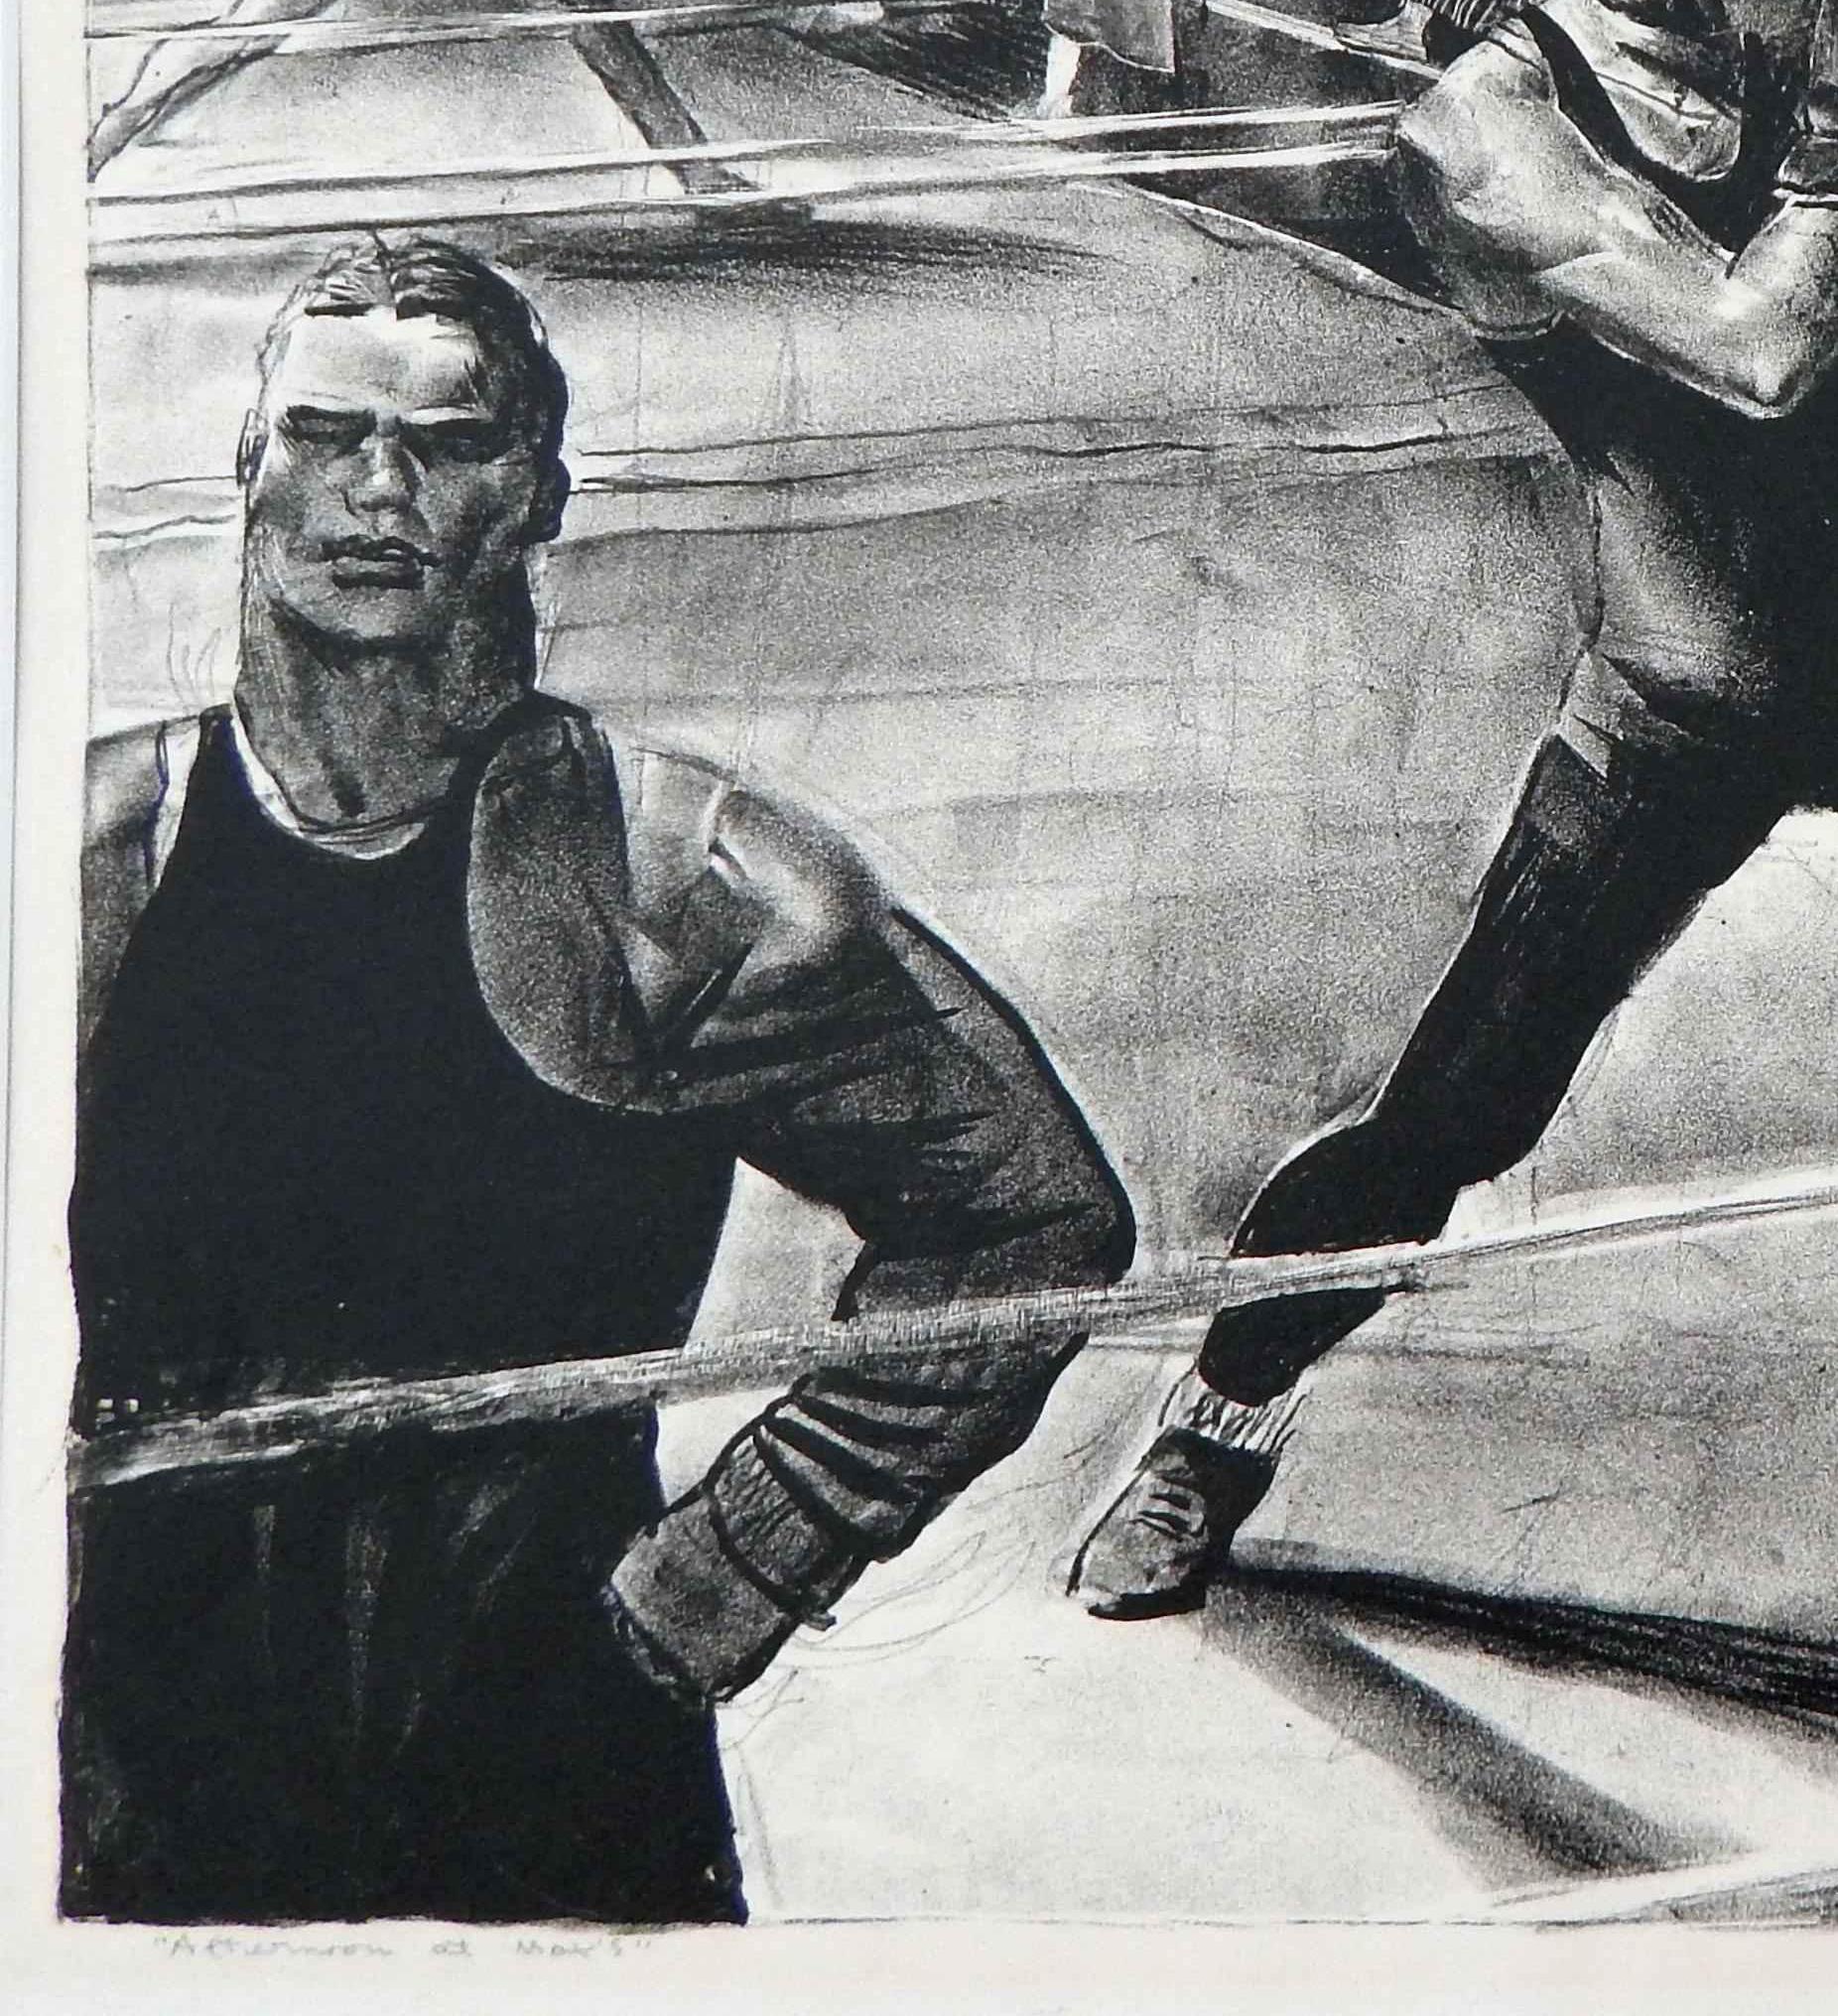 Milieu du XXe siècle Lithographie originale de Robert Riggs sur pierre, sujet de boxe « Afternoon at Max's » (après-midi chez Max) en vente